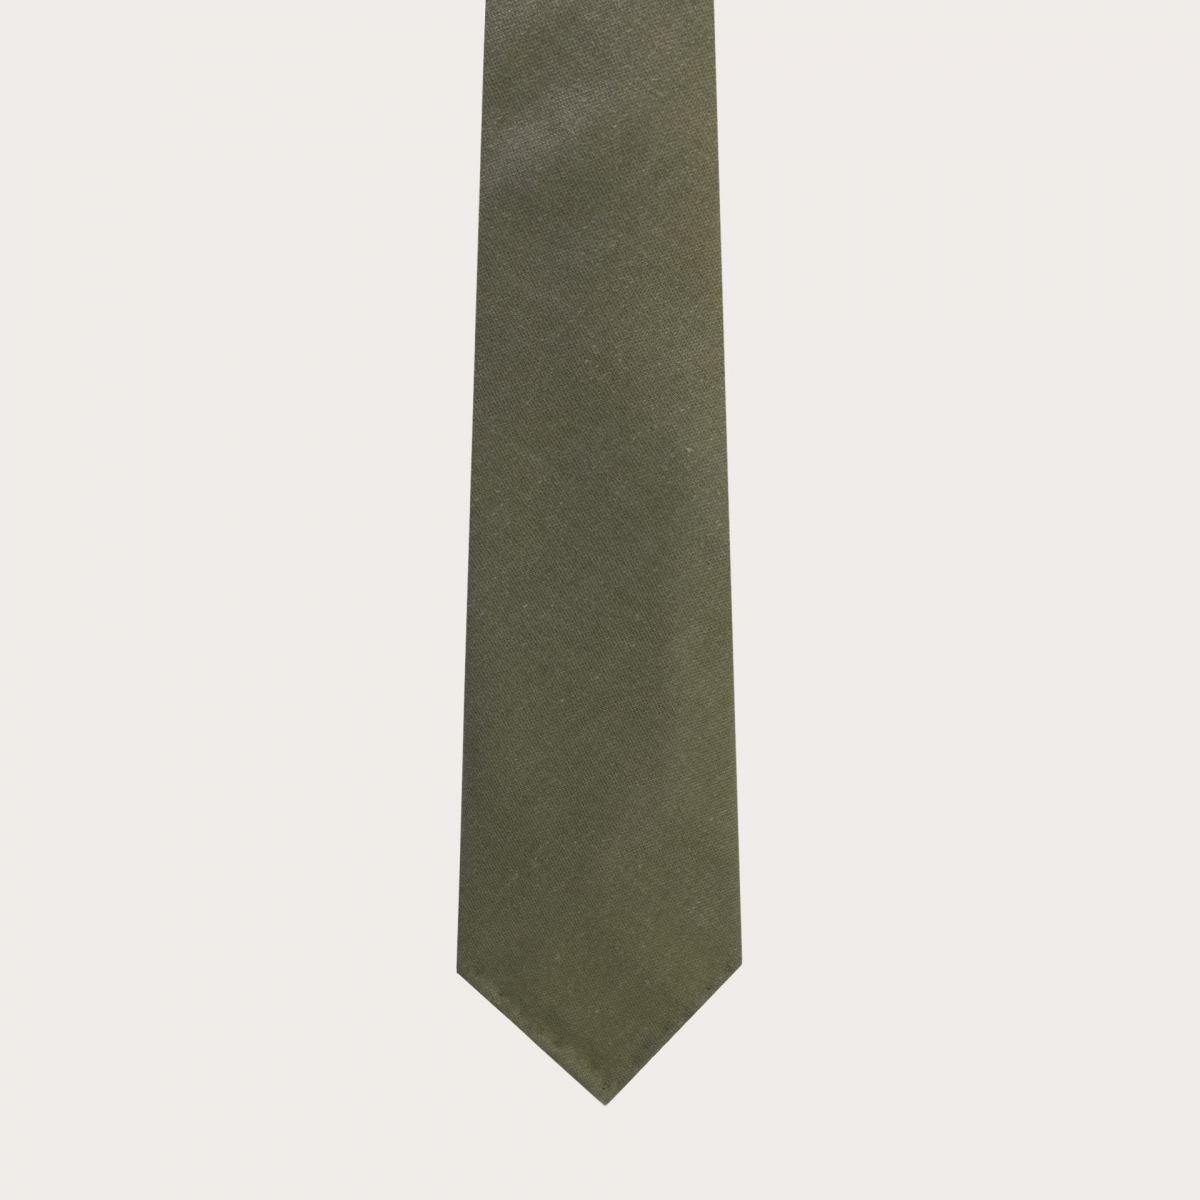 Unlined necktie green